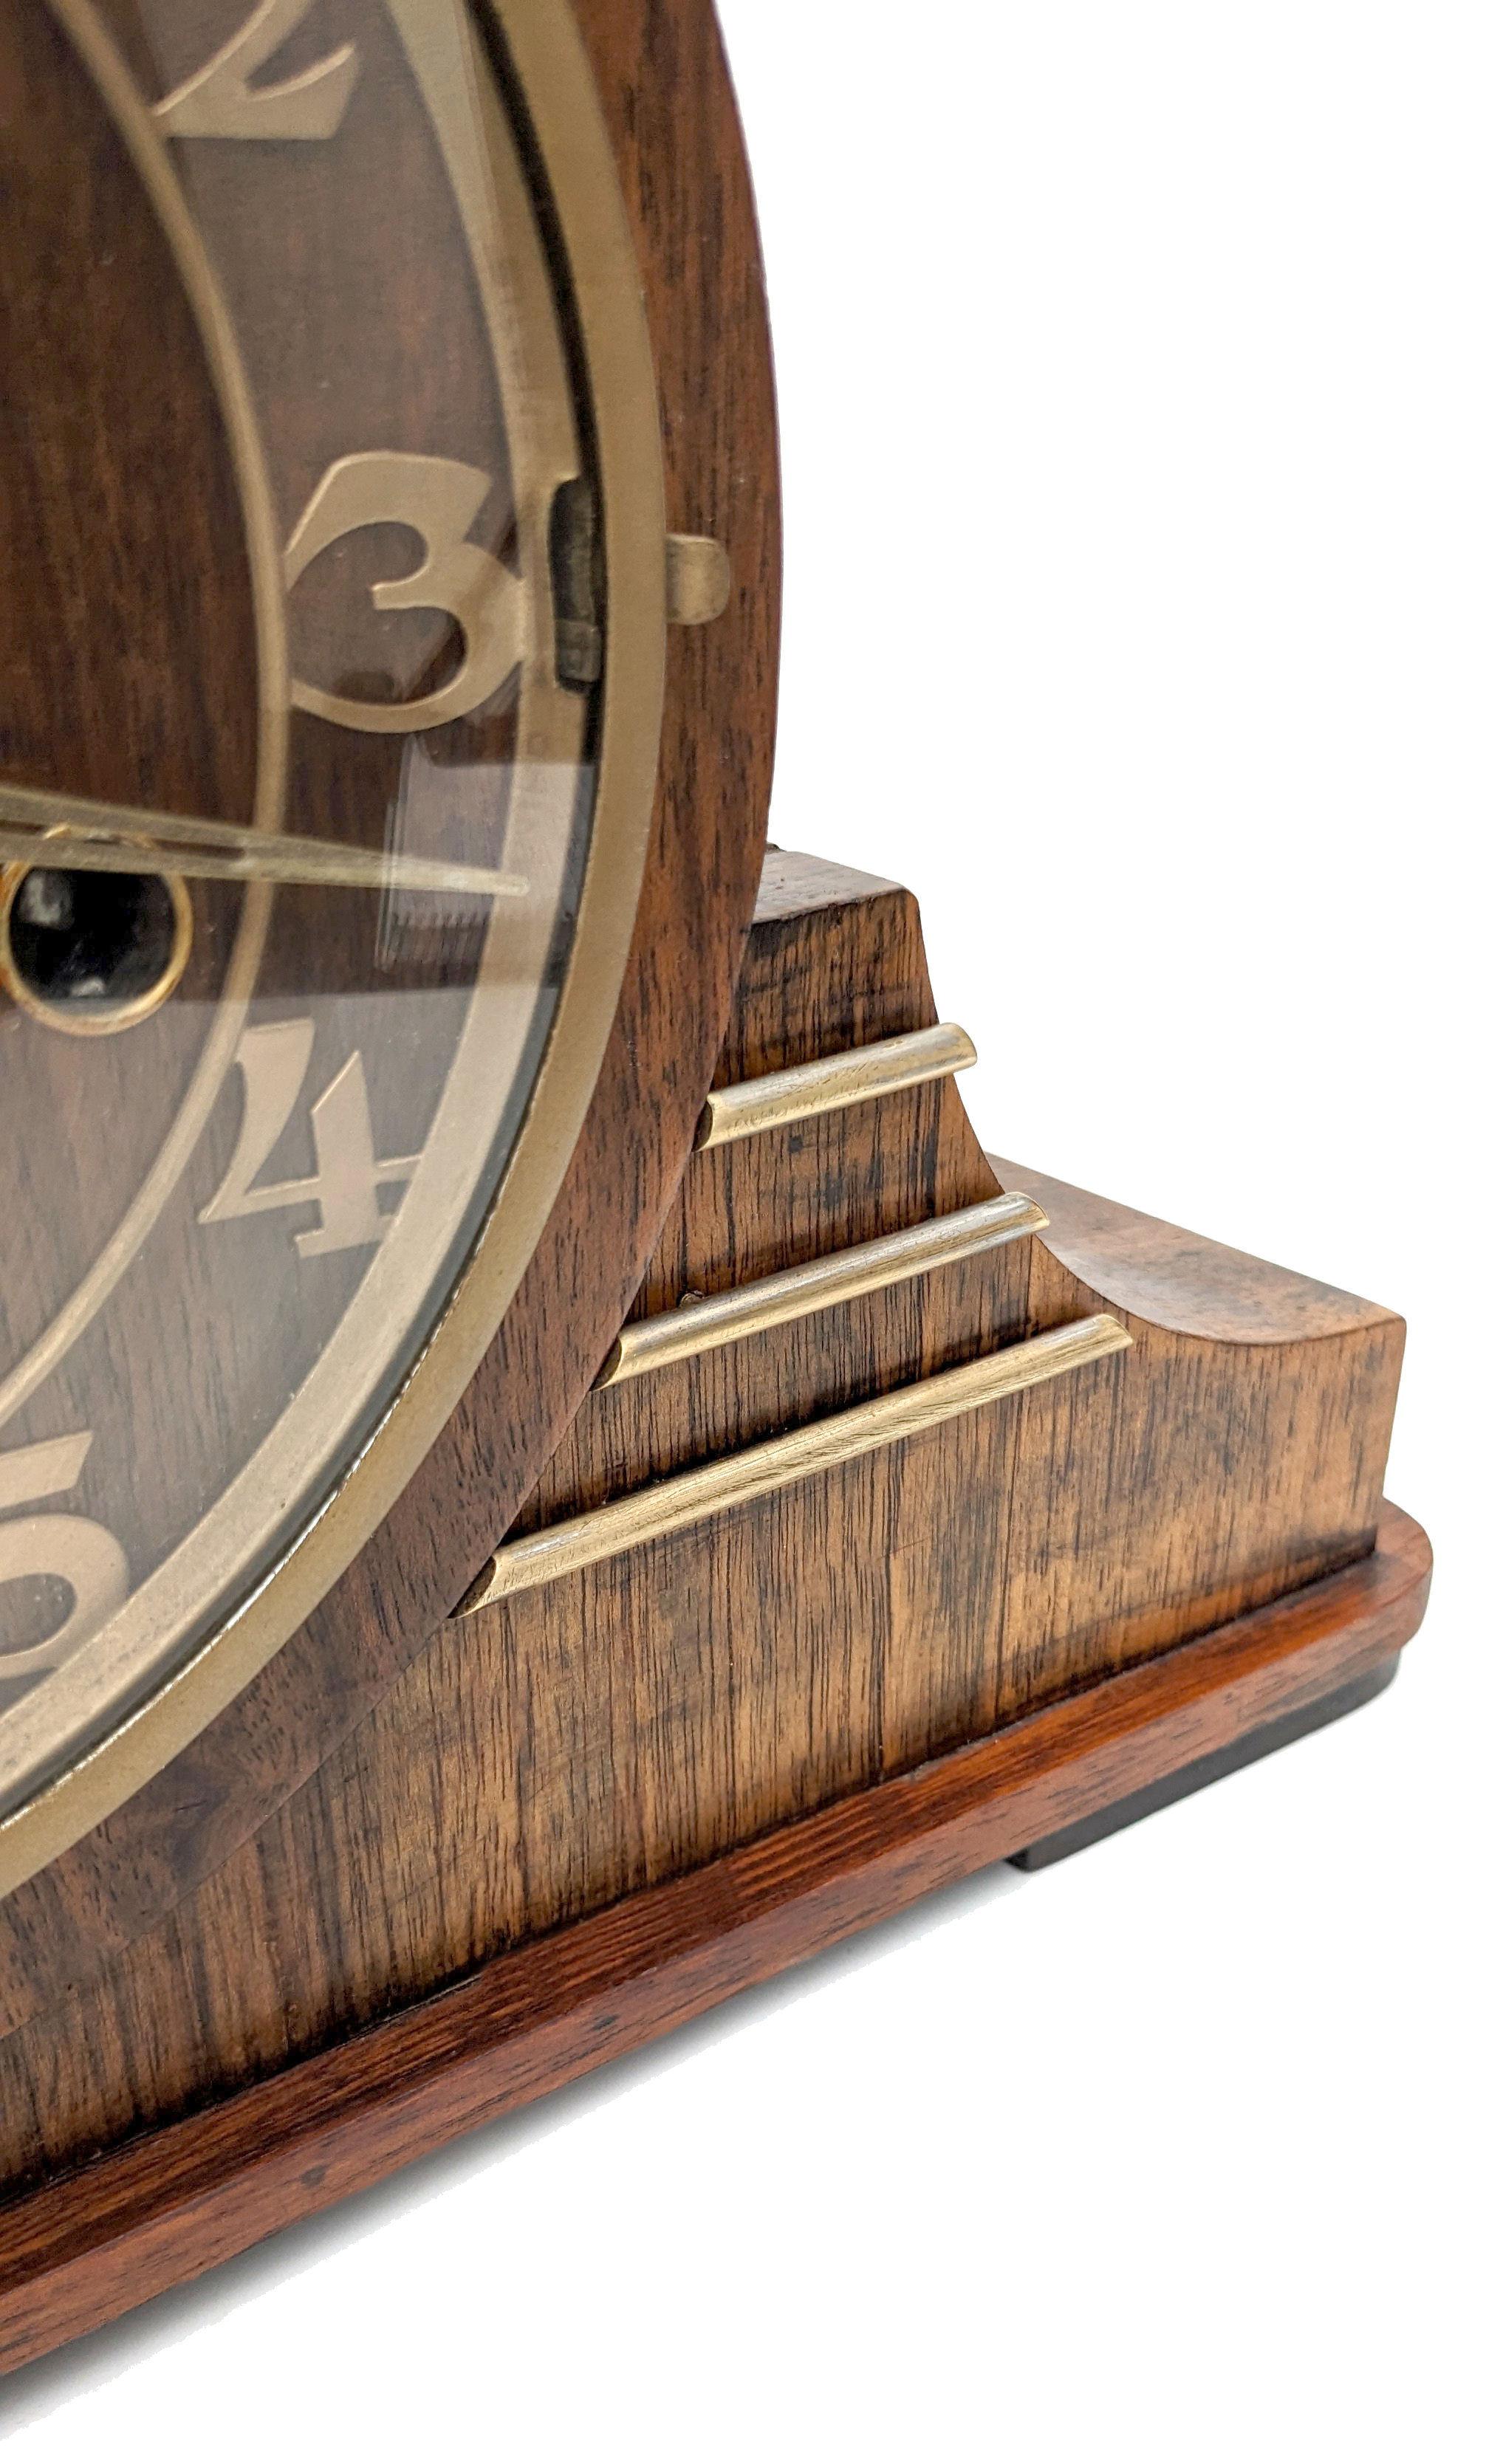 Nous vous proposons cette très élégante horloge de cheminée Art déco des années 1930 fabriquée en Allemagne par les horlogers Haller. En parfait état de marche - révisé, testé et calibré par un horloger qualifié. Fabuleux et rare coffret asymétrique